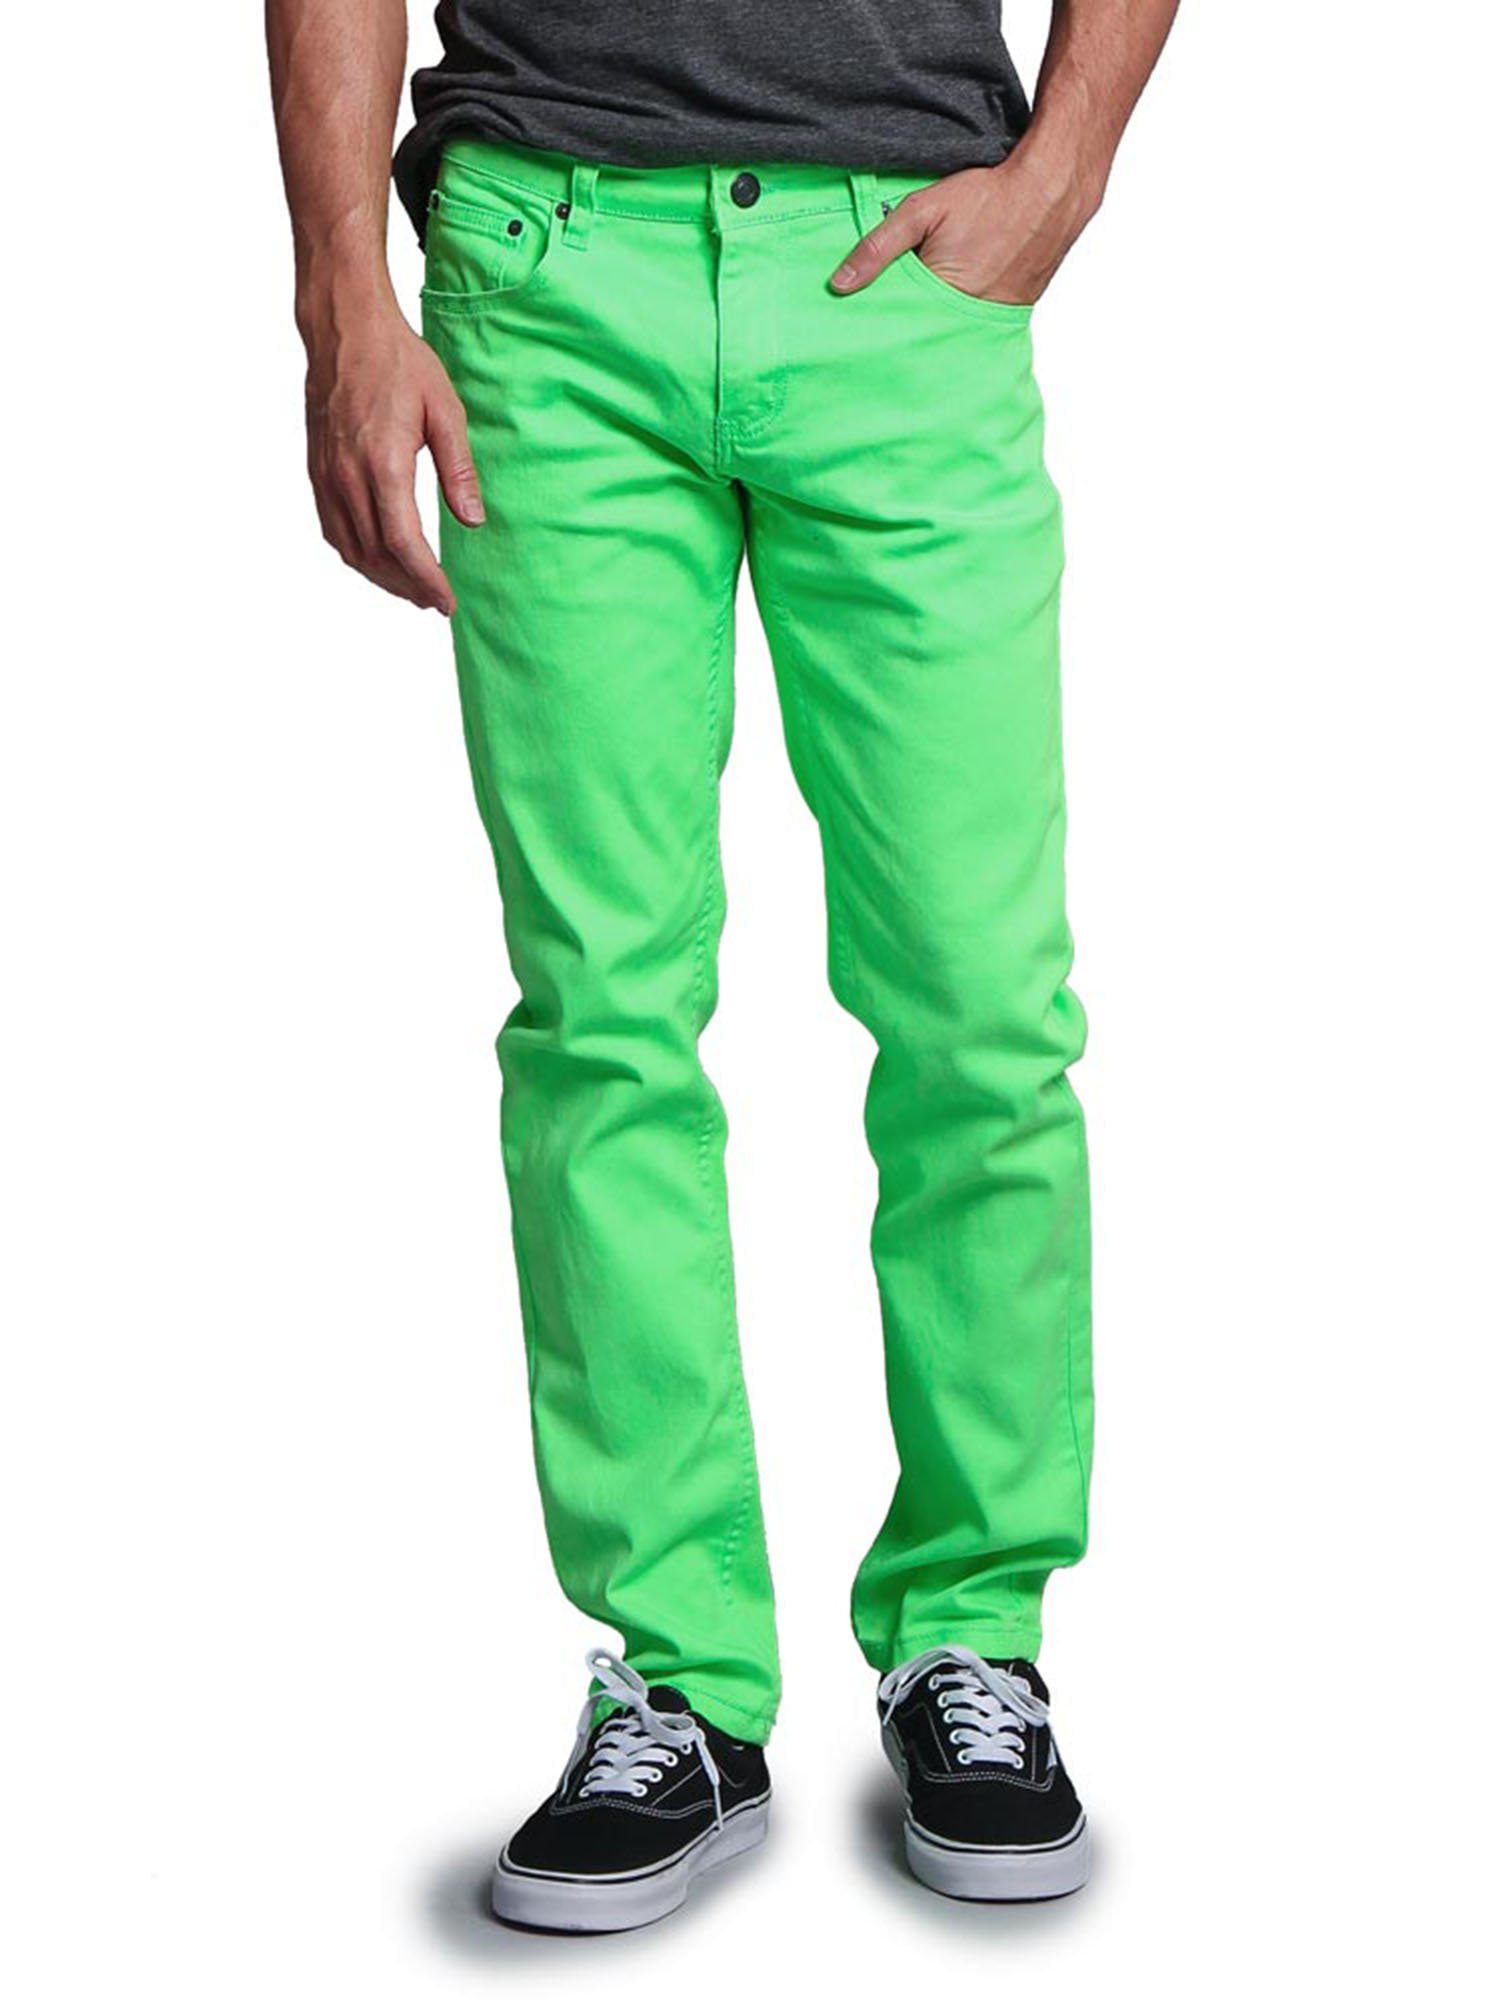 Victorious Men's Spandex Color Skinny Jeans Stretch Colored Pants   DL937-PART-1 